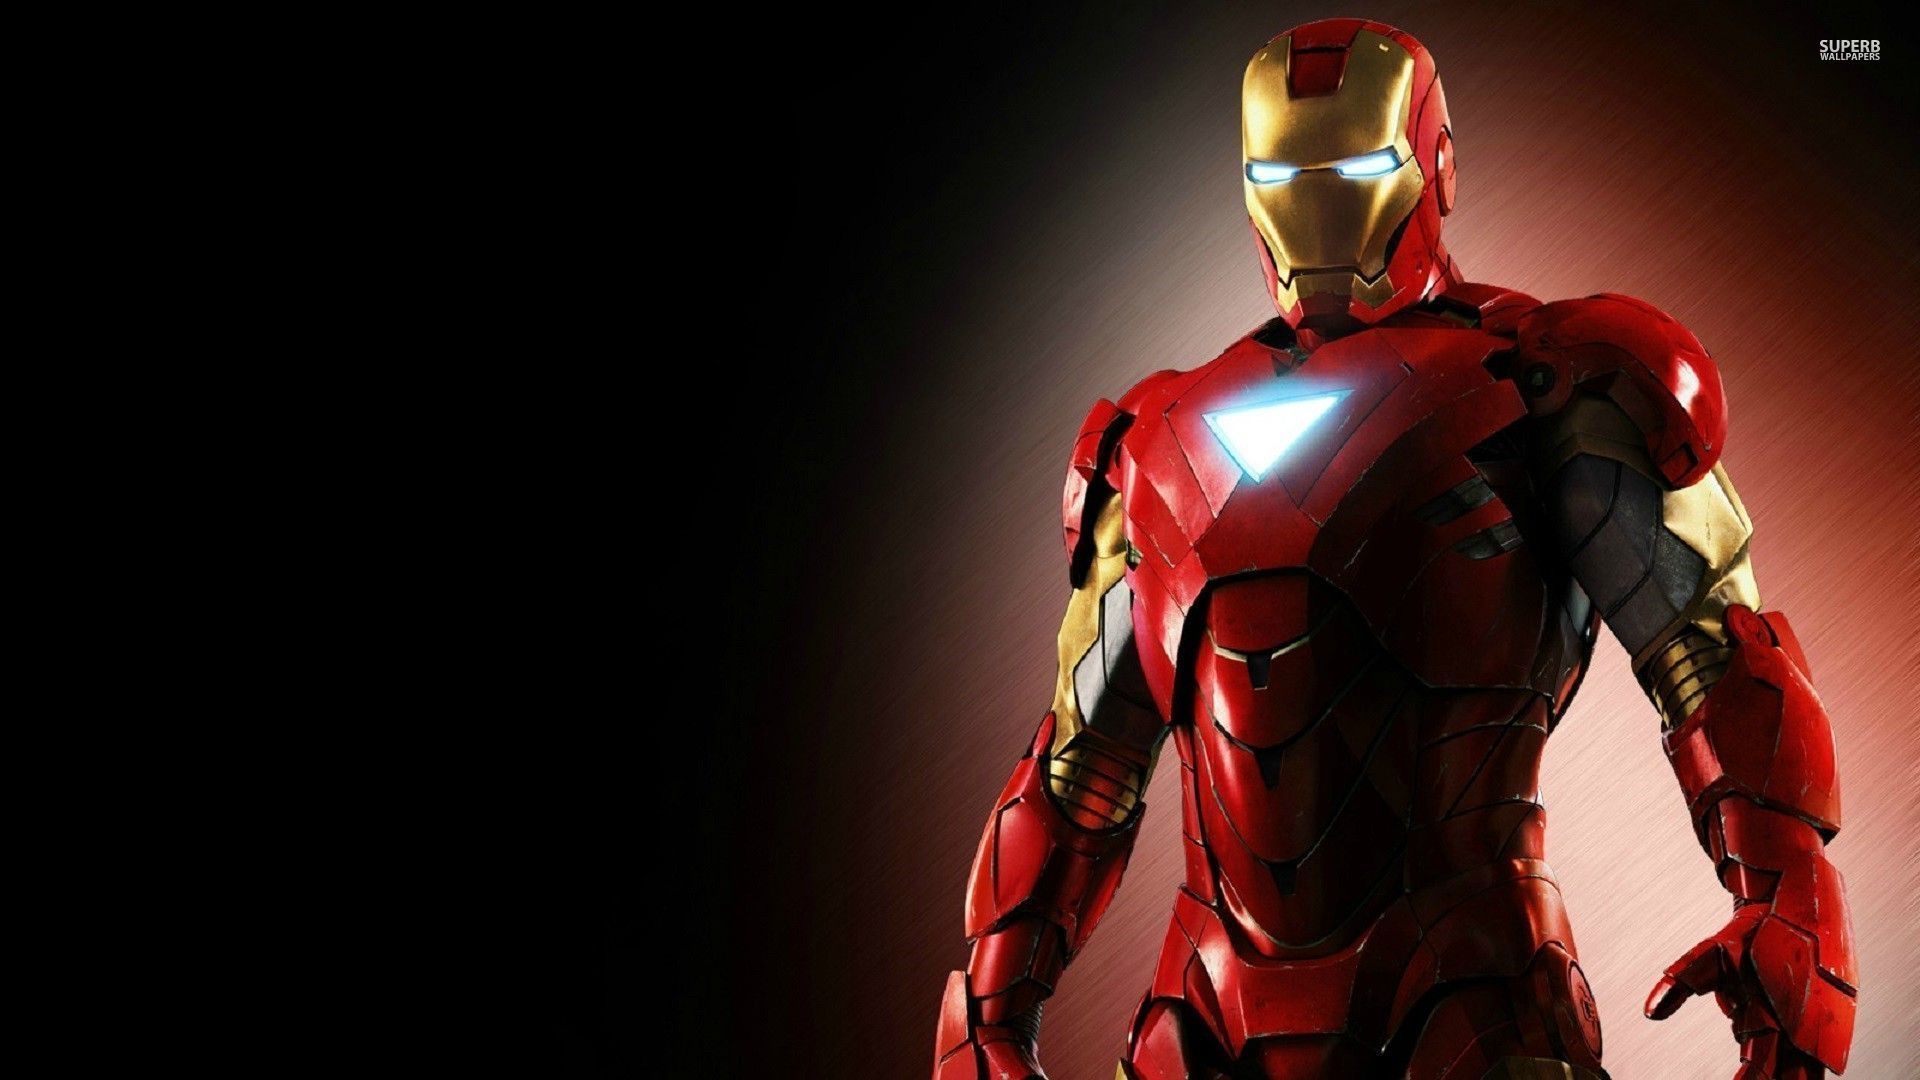 Iron Man Hd fondo de pantalla gratuito Descargar 1920 × 1200 Iron Man fotos